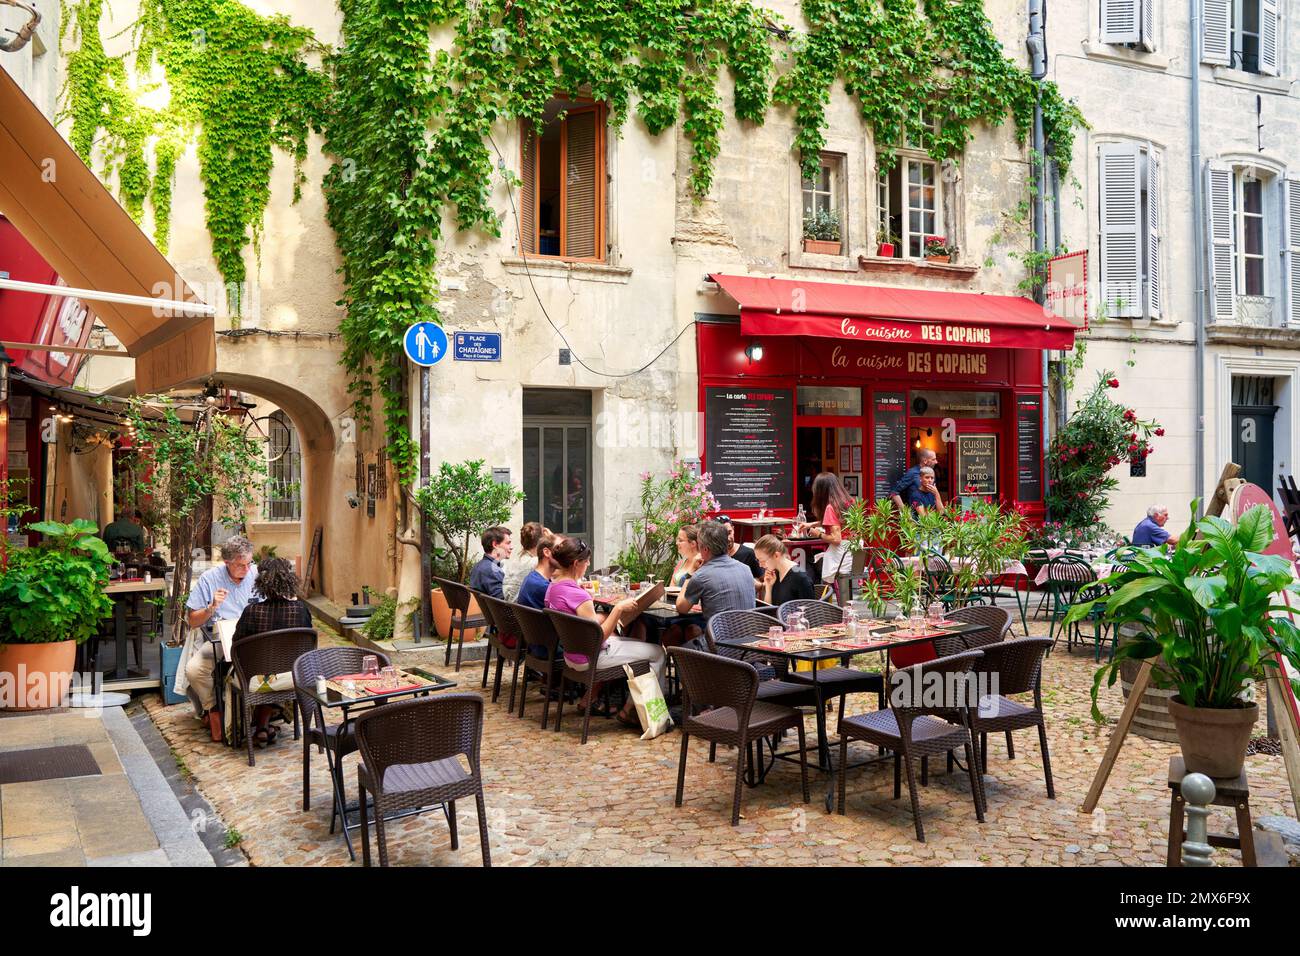 Place des Chataîgnes, Avignone, Vaucluse, Provence-Alpes-Côte d’Azur, Francia, Europa. La Place des Chataîgnes è una grande piazza aperta situata nel Foto Stock